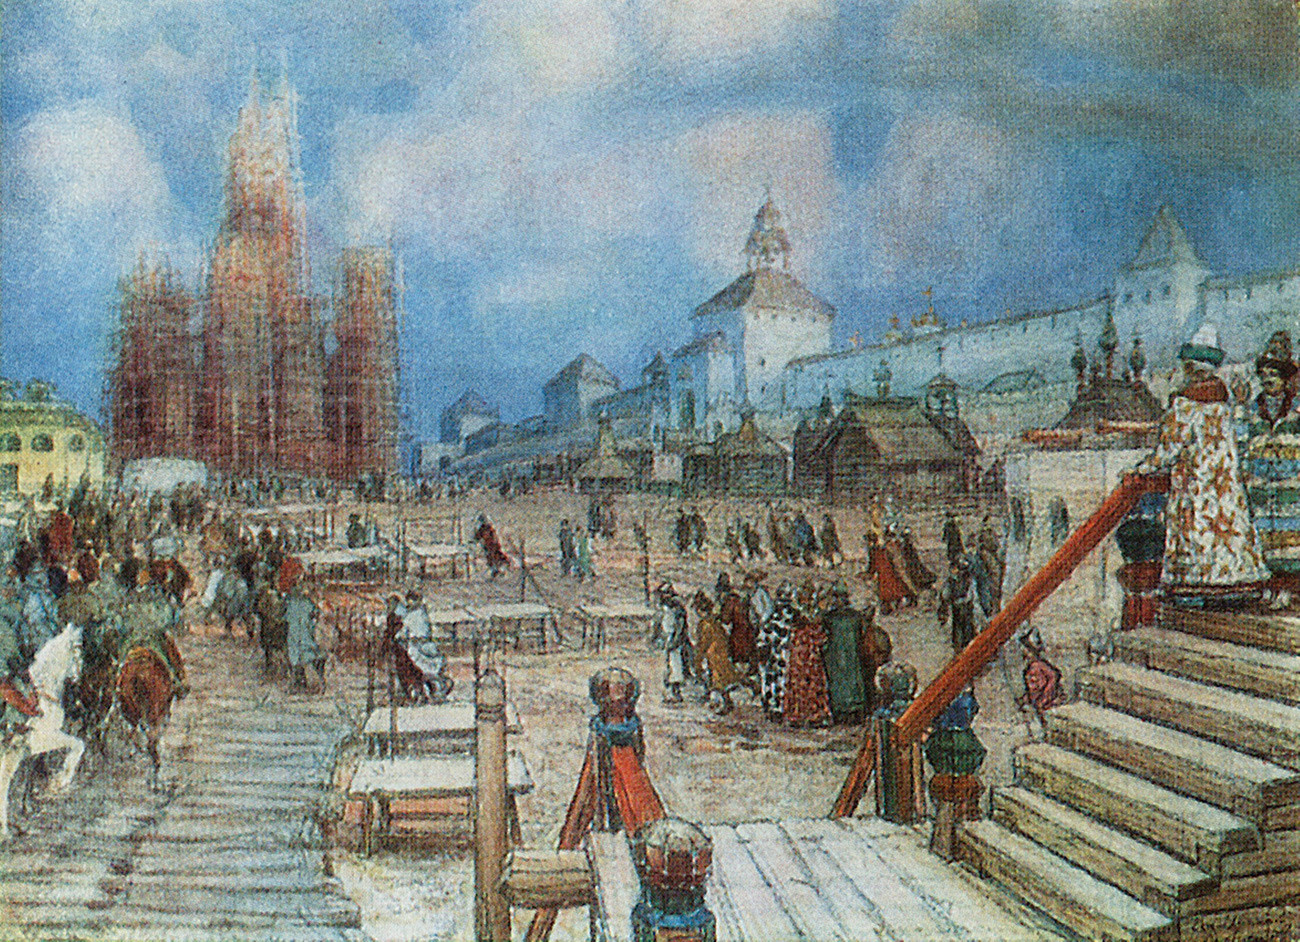 Der Rote Platz in der Zeit von Iwan dem Schrecklichen